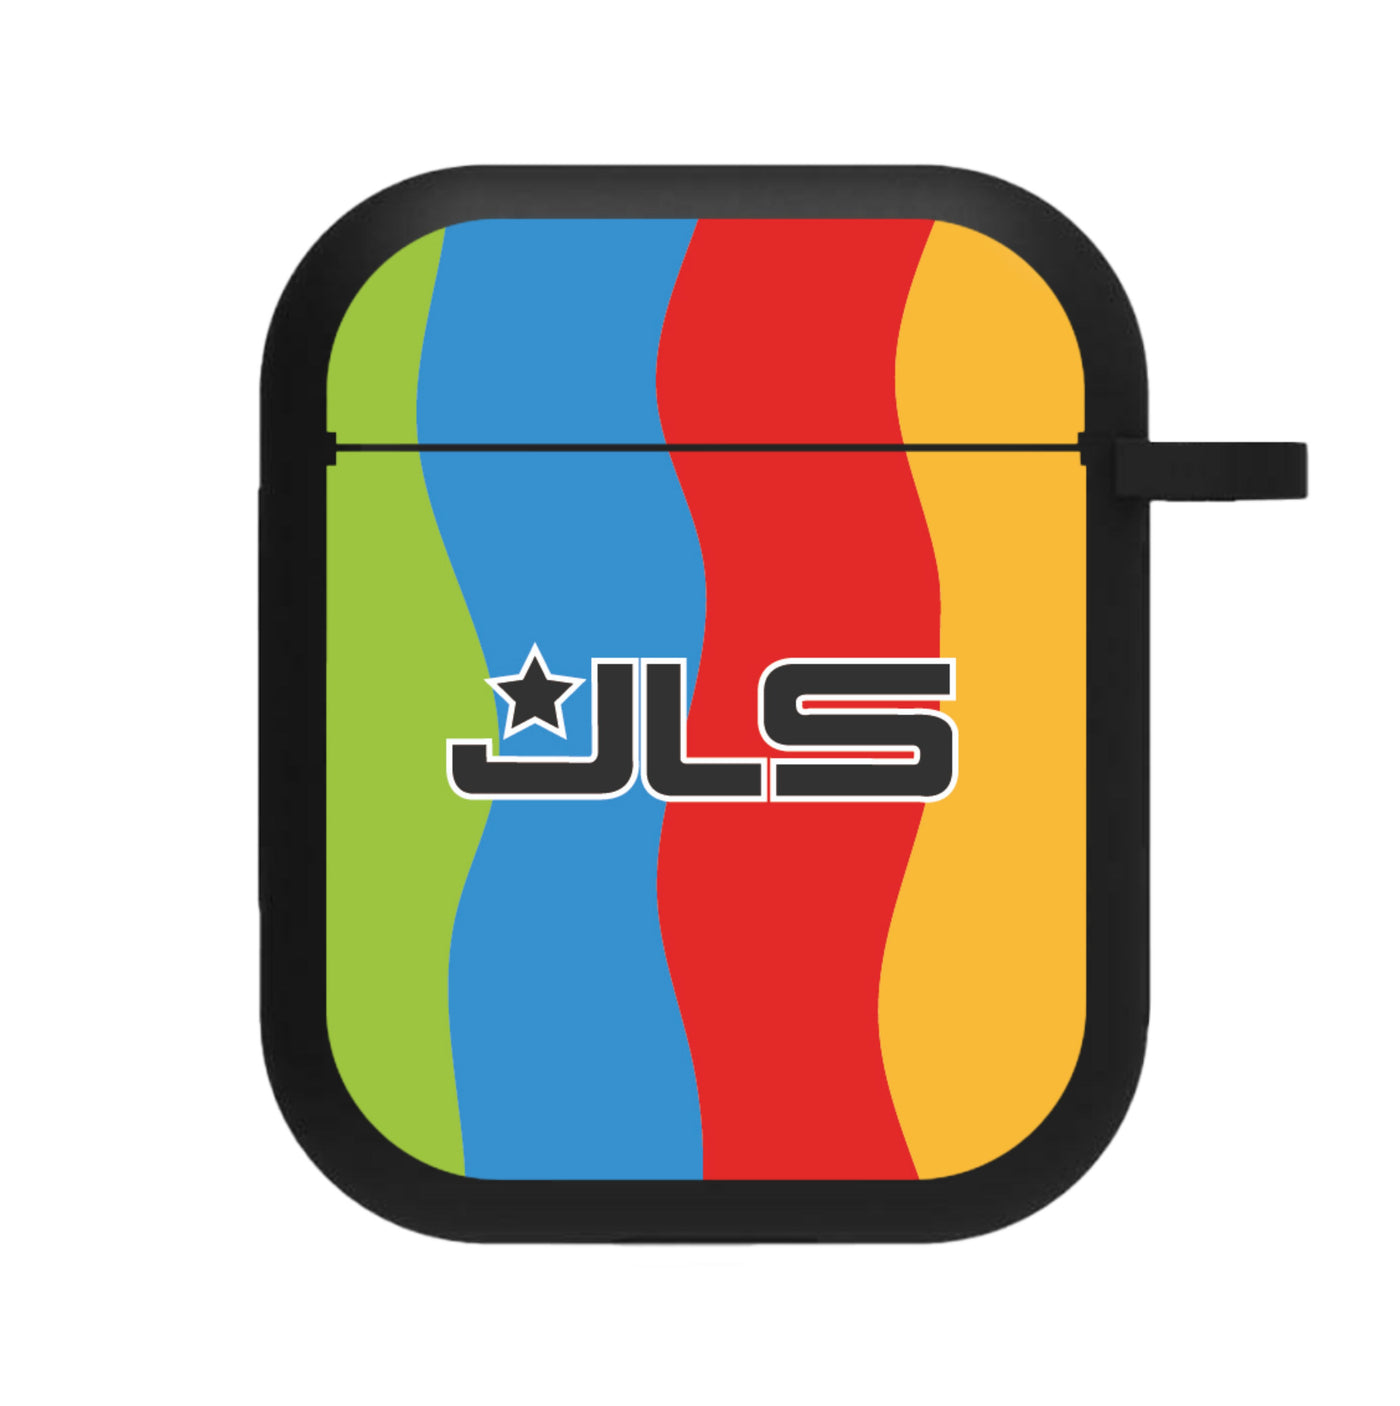 JLS logo AirPods Case